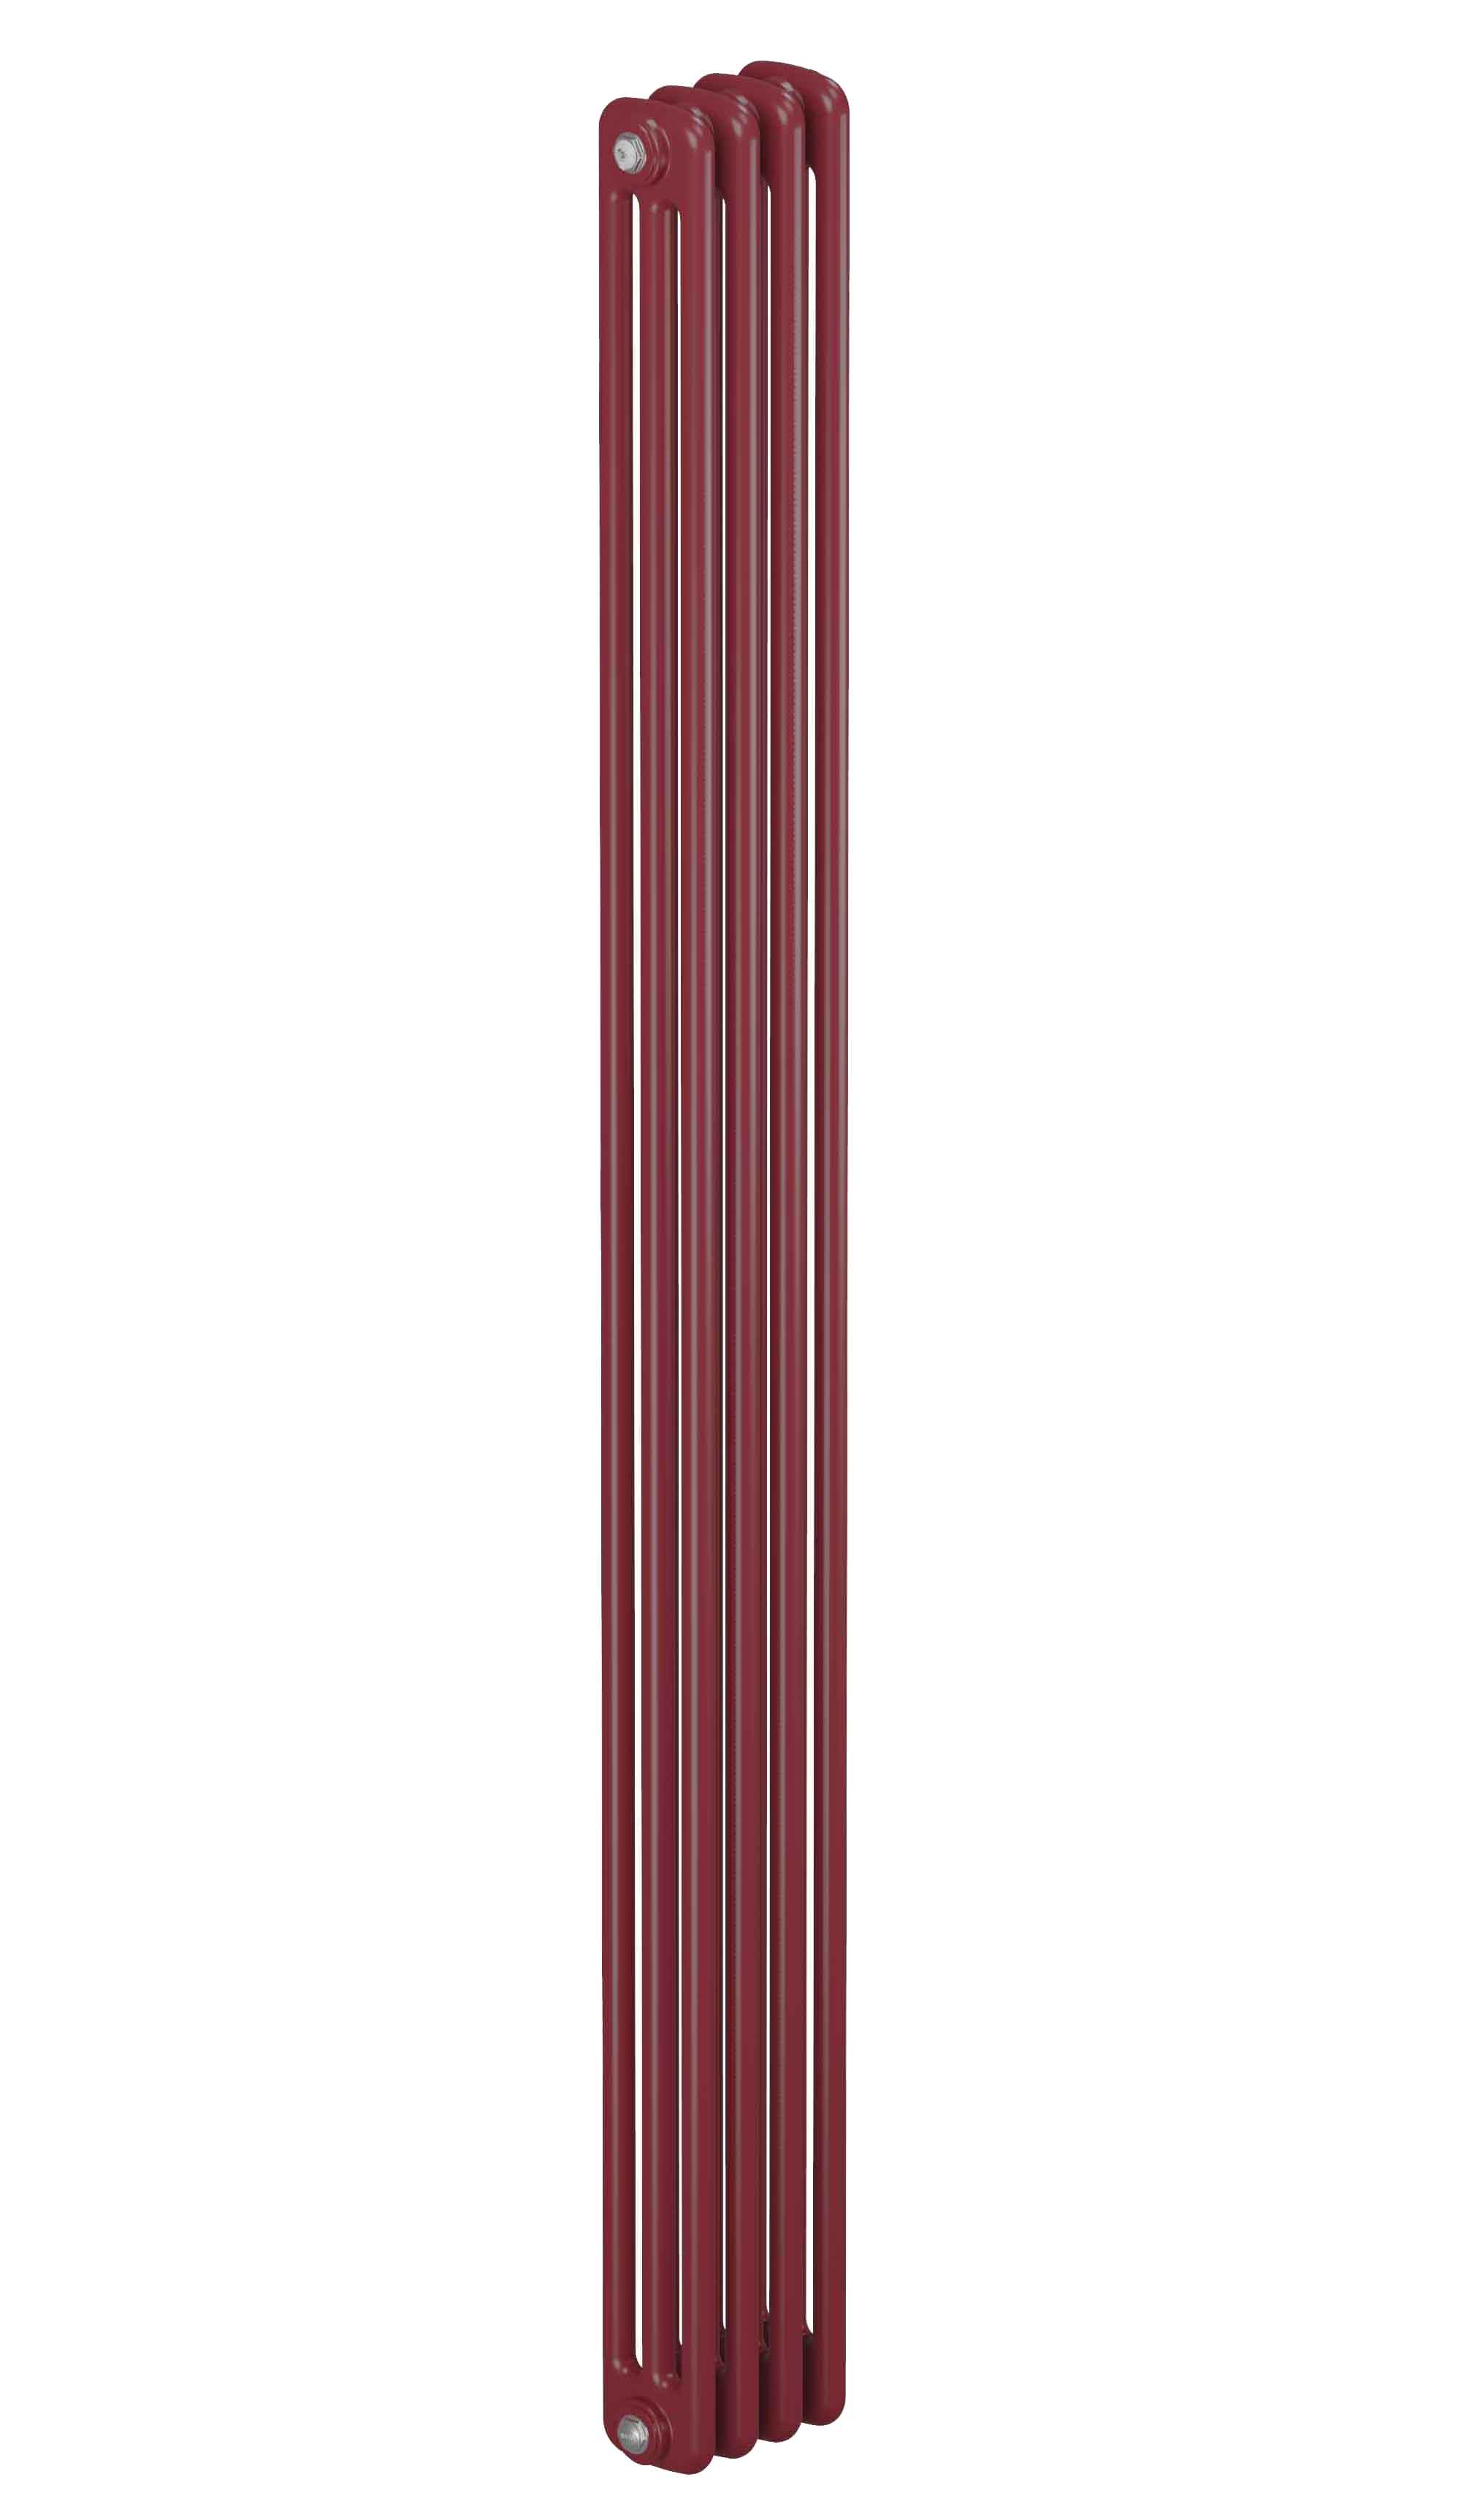 Трубчатый радиатор Rifar Tubog 3180, 4 секции, 3-колончатый, красно-коричневый (бордо), DV1